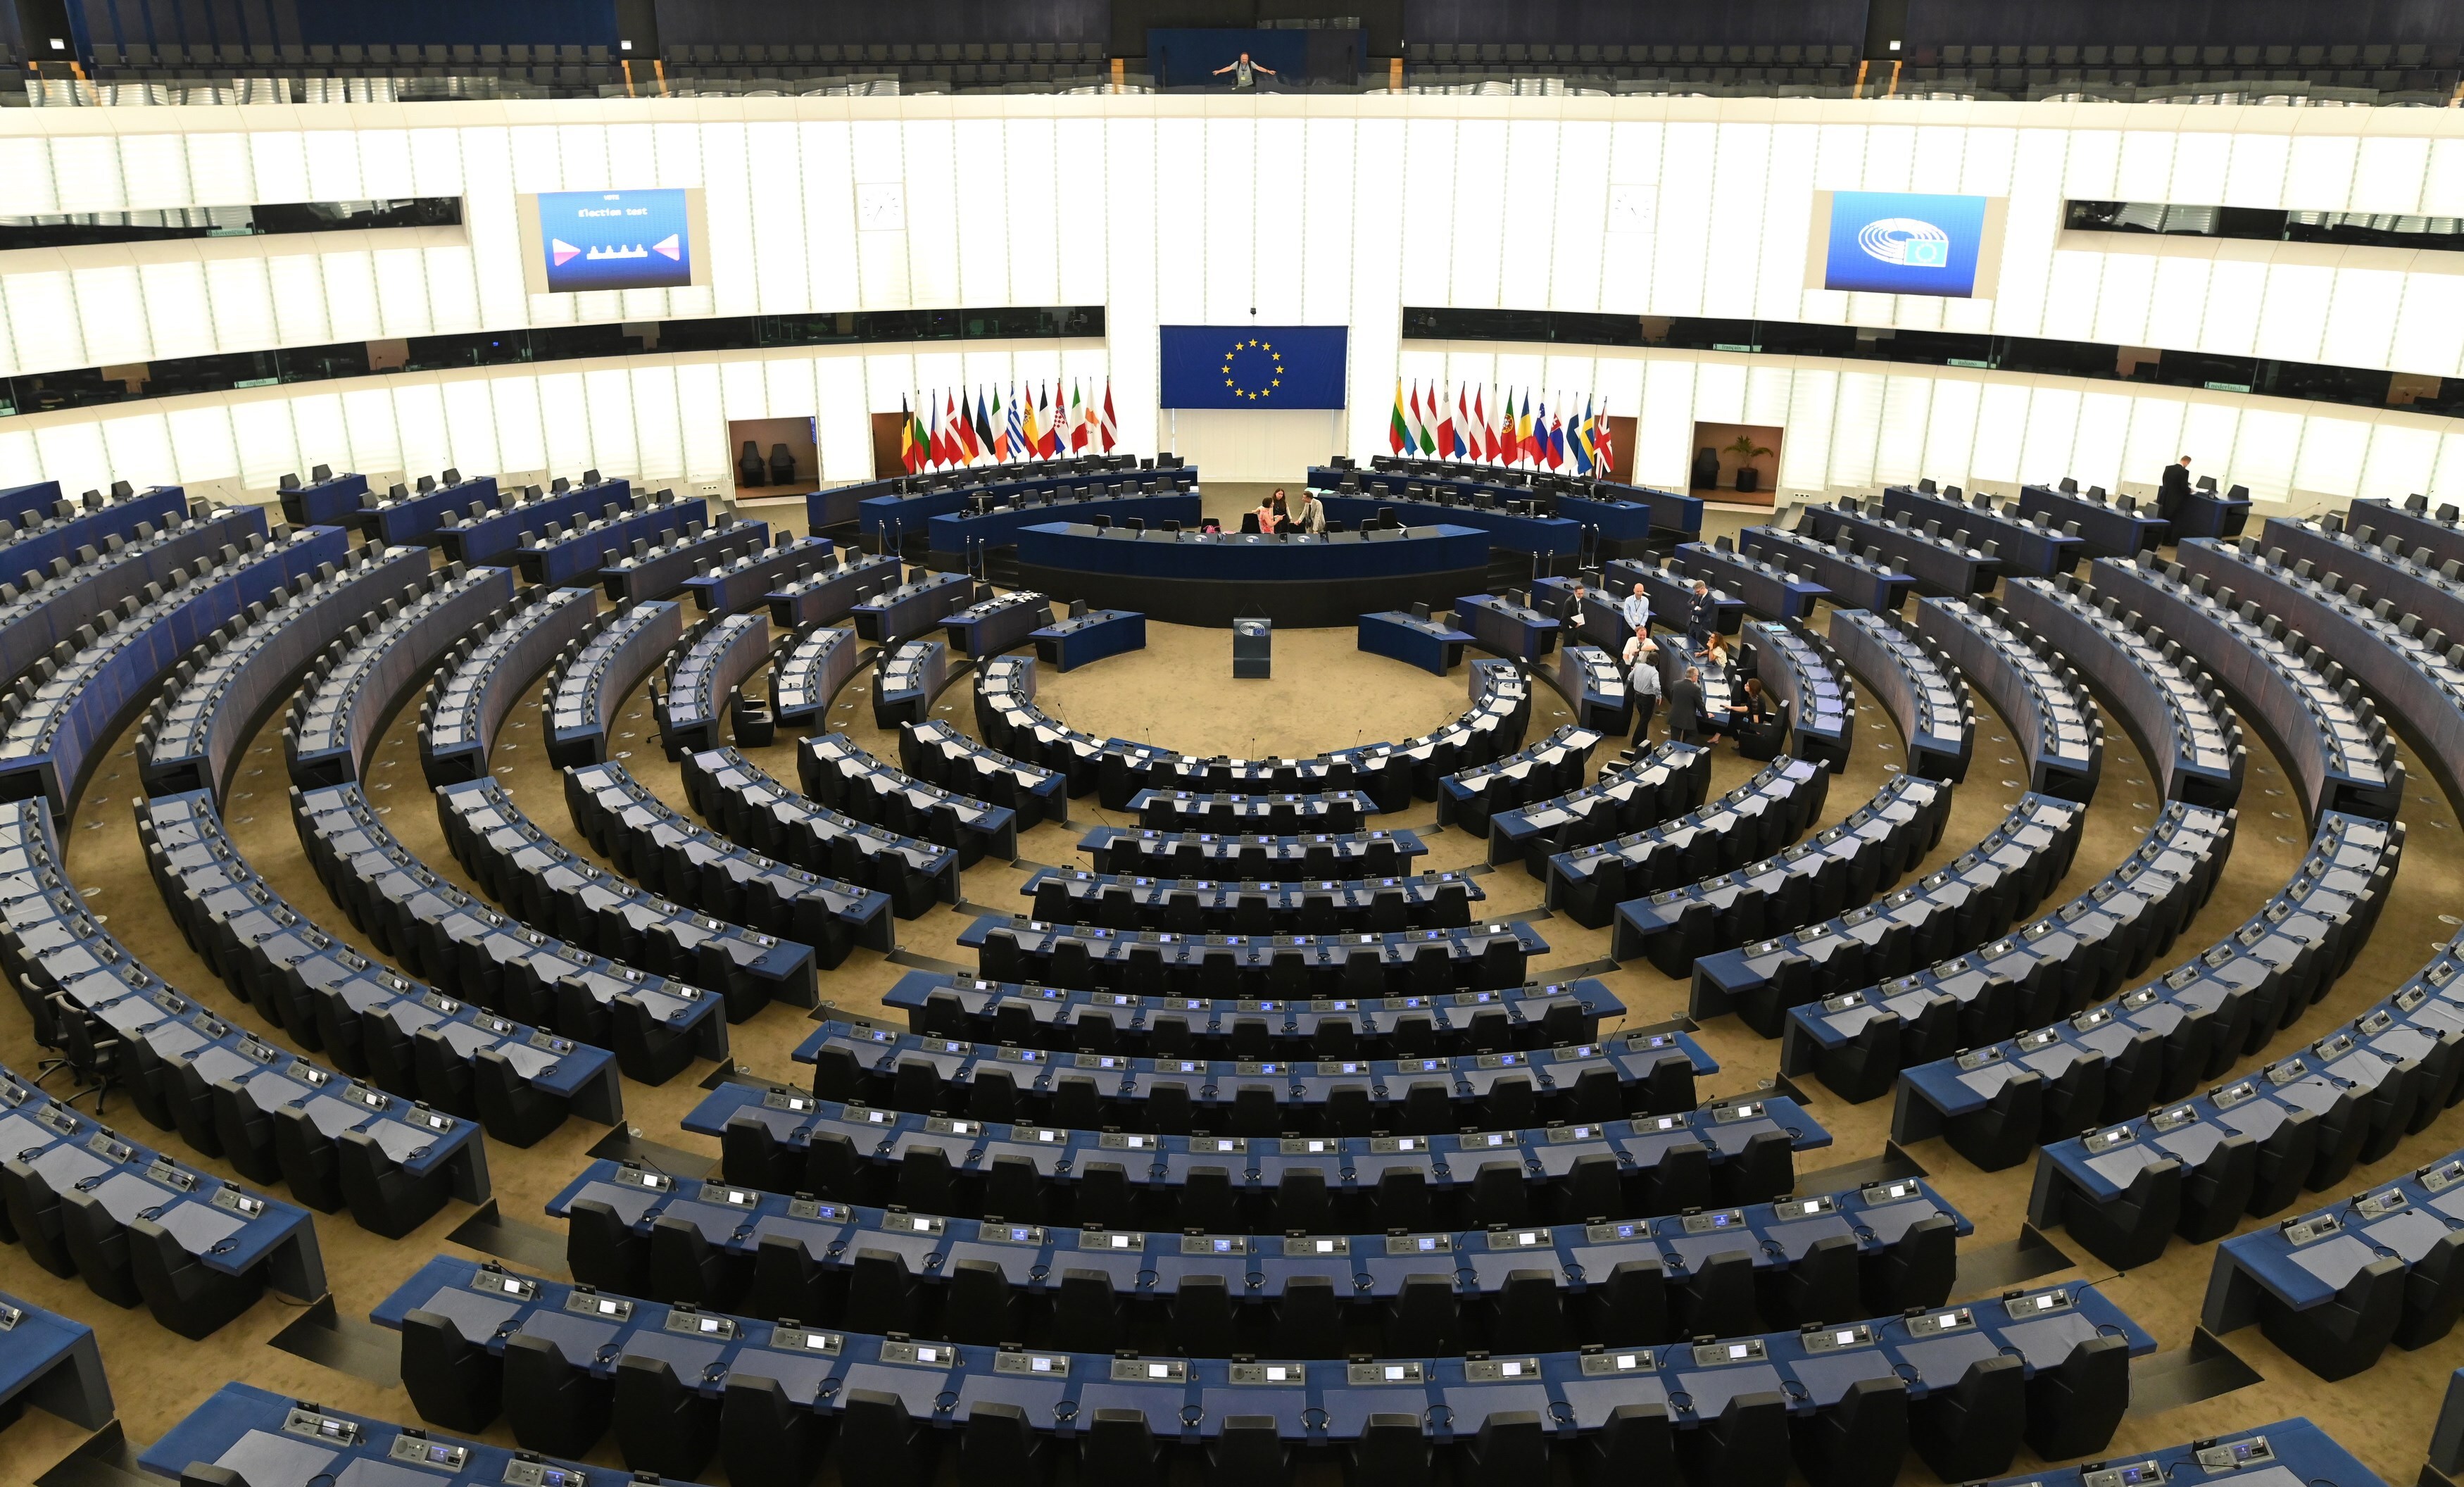 Vista de la sala plenaria del Parlamento Europeo en Estrasburgo (Francia) en una imagen de archivo. EFE/Patrick Seeger
